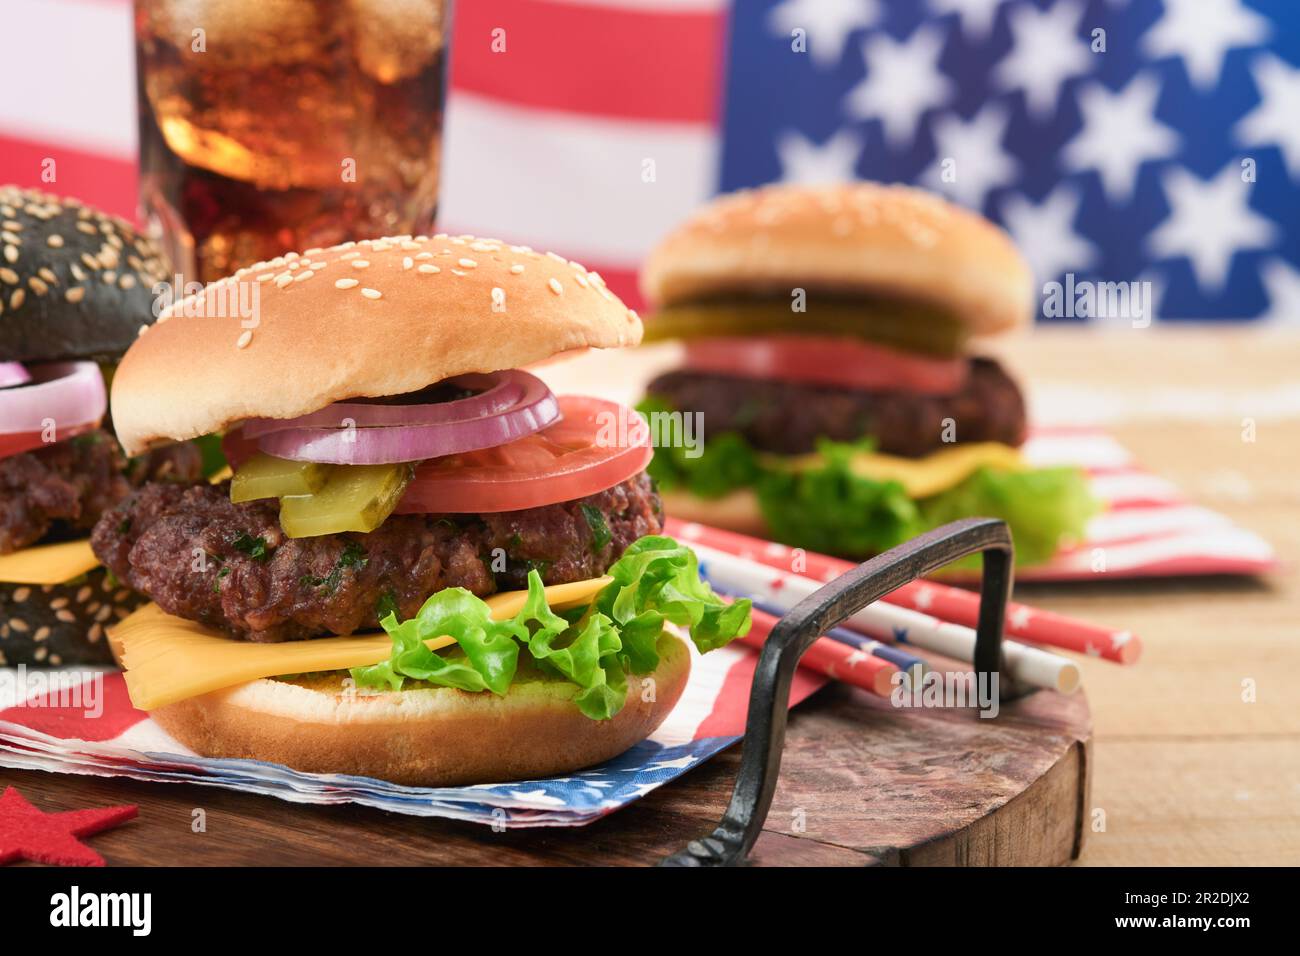 4th de juillet American Independence Day cuisine traditionnelle de pique-nique. Hamburger américain et cocktail, drapeaux américains et symboles de l'holida de pique-nique patriotique des États-Unis Banque D'Images